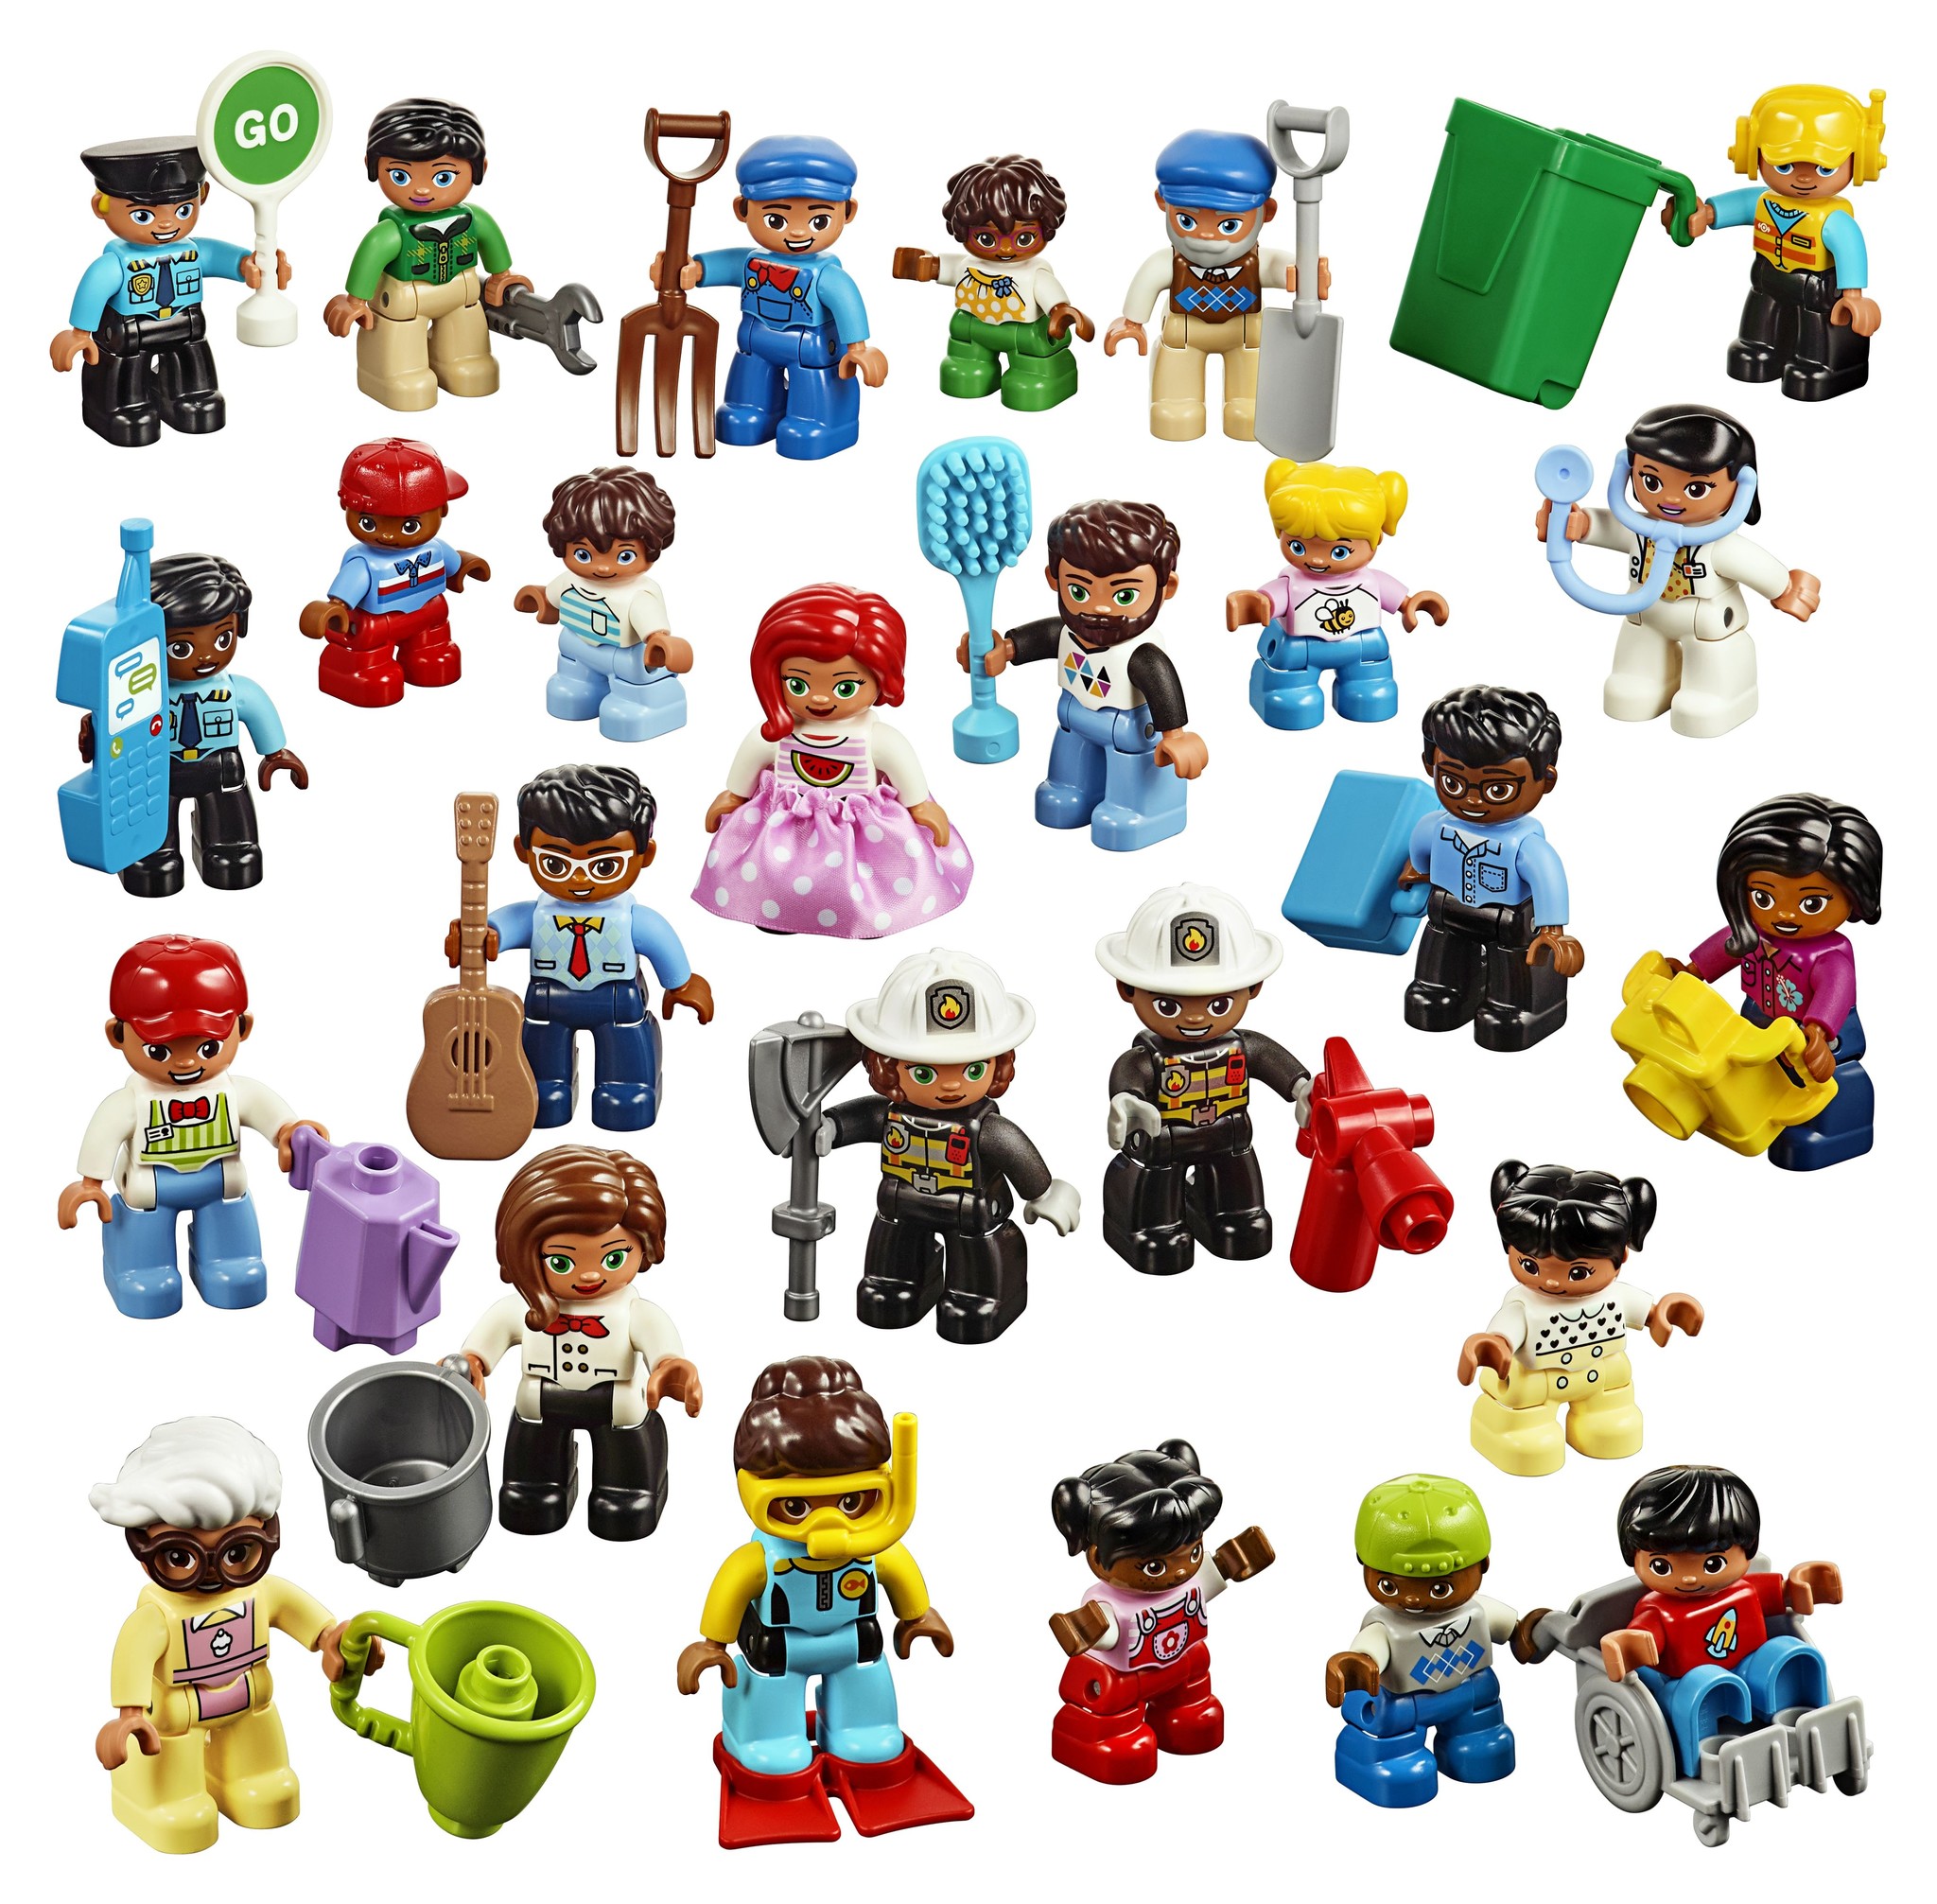 Kan niet lezen of schrijven abces telescoop LEGO DUPLO Minifiguren set 45030 - voordelig kopen bij Kinderspel® -  Kinderspel ®